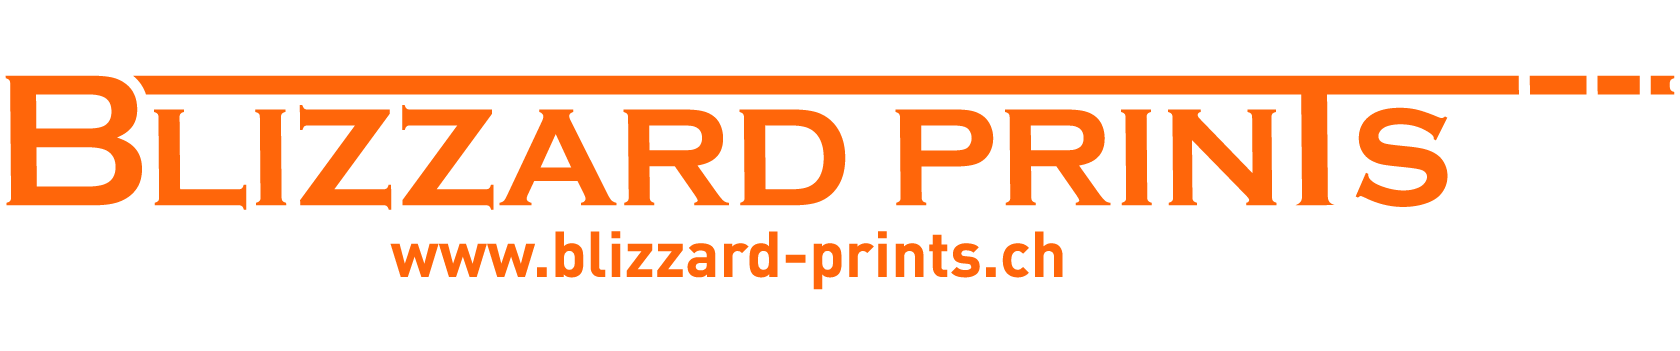 Blizzard-Prints GmbH